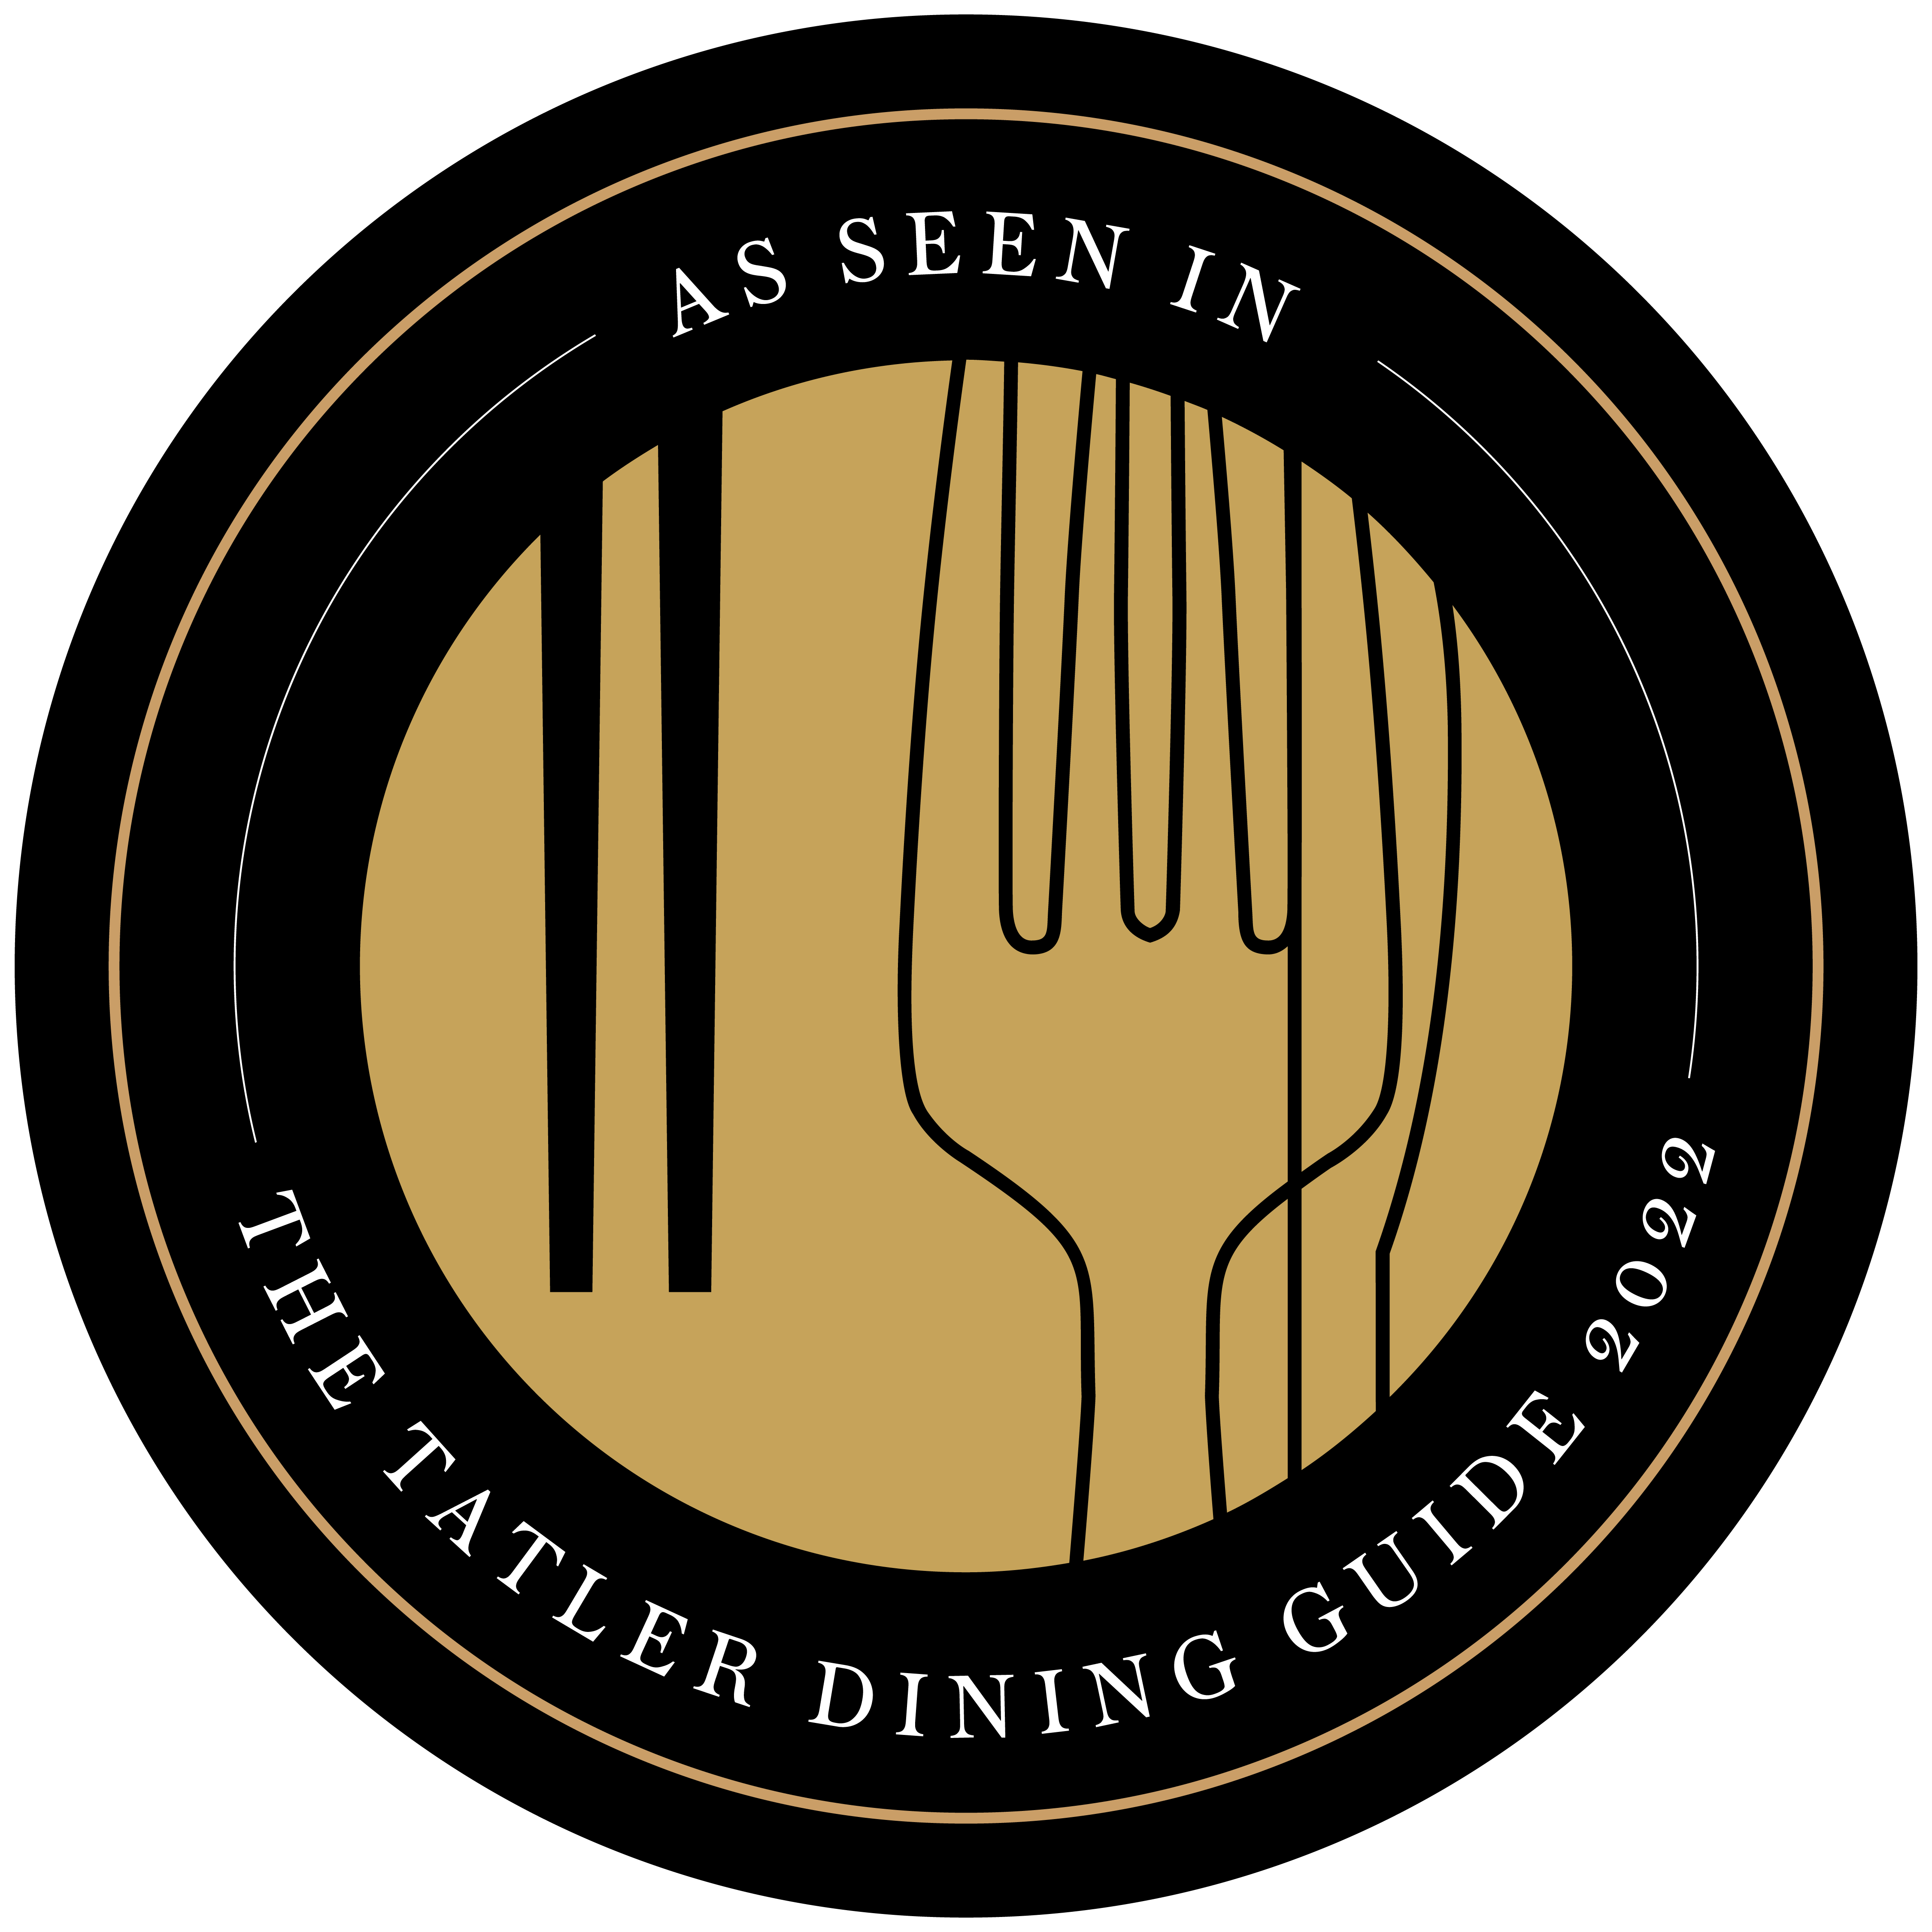 Tatler Dining Guide 2022 上榜 